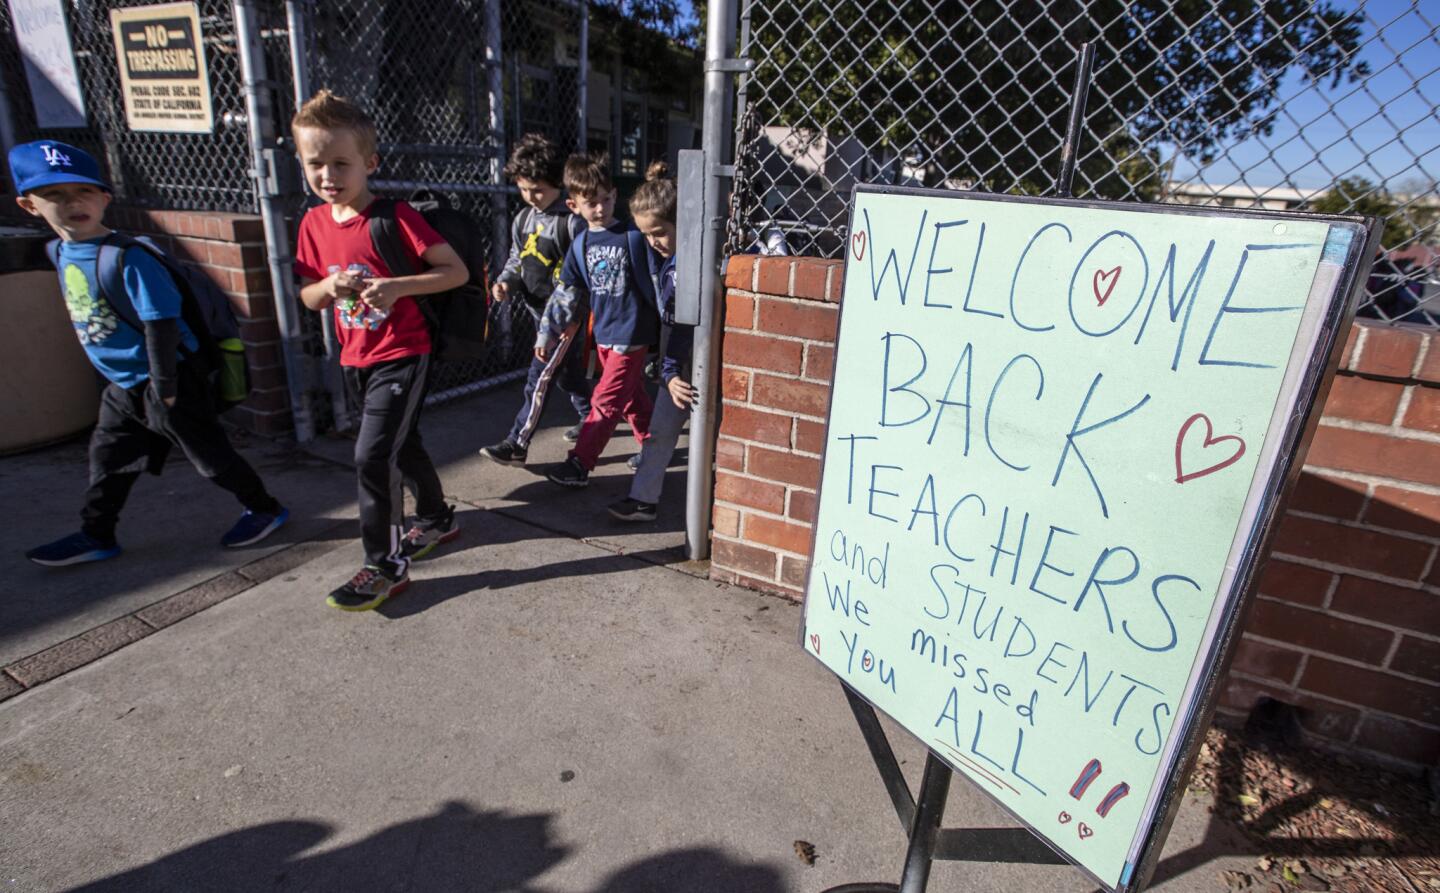 L.A. teachers return to work